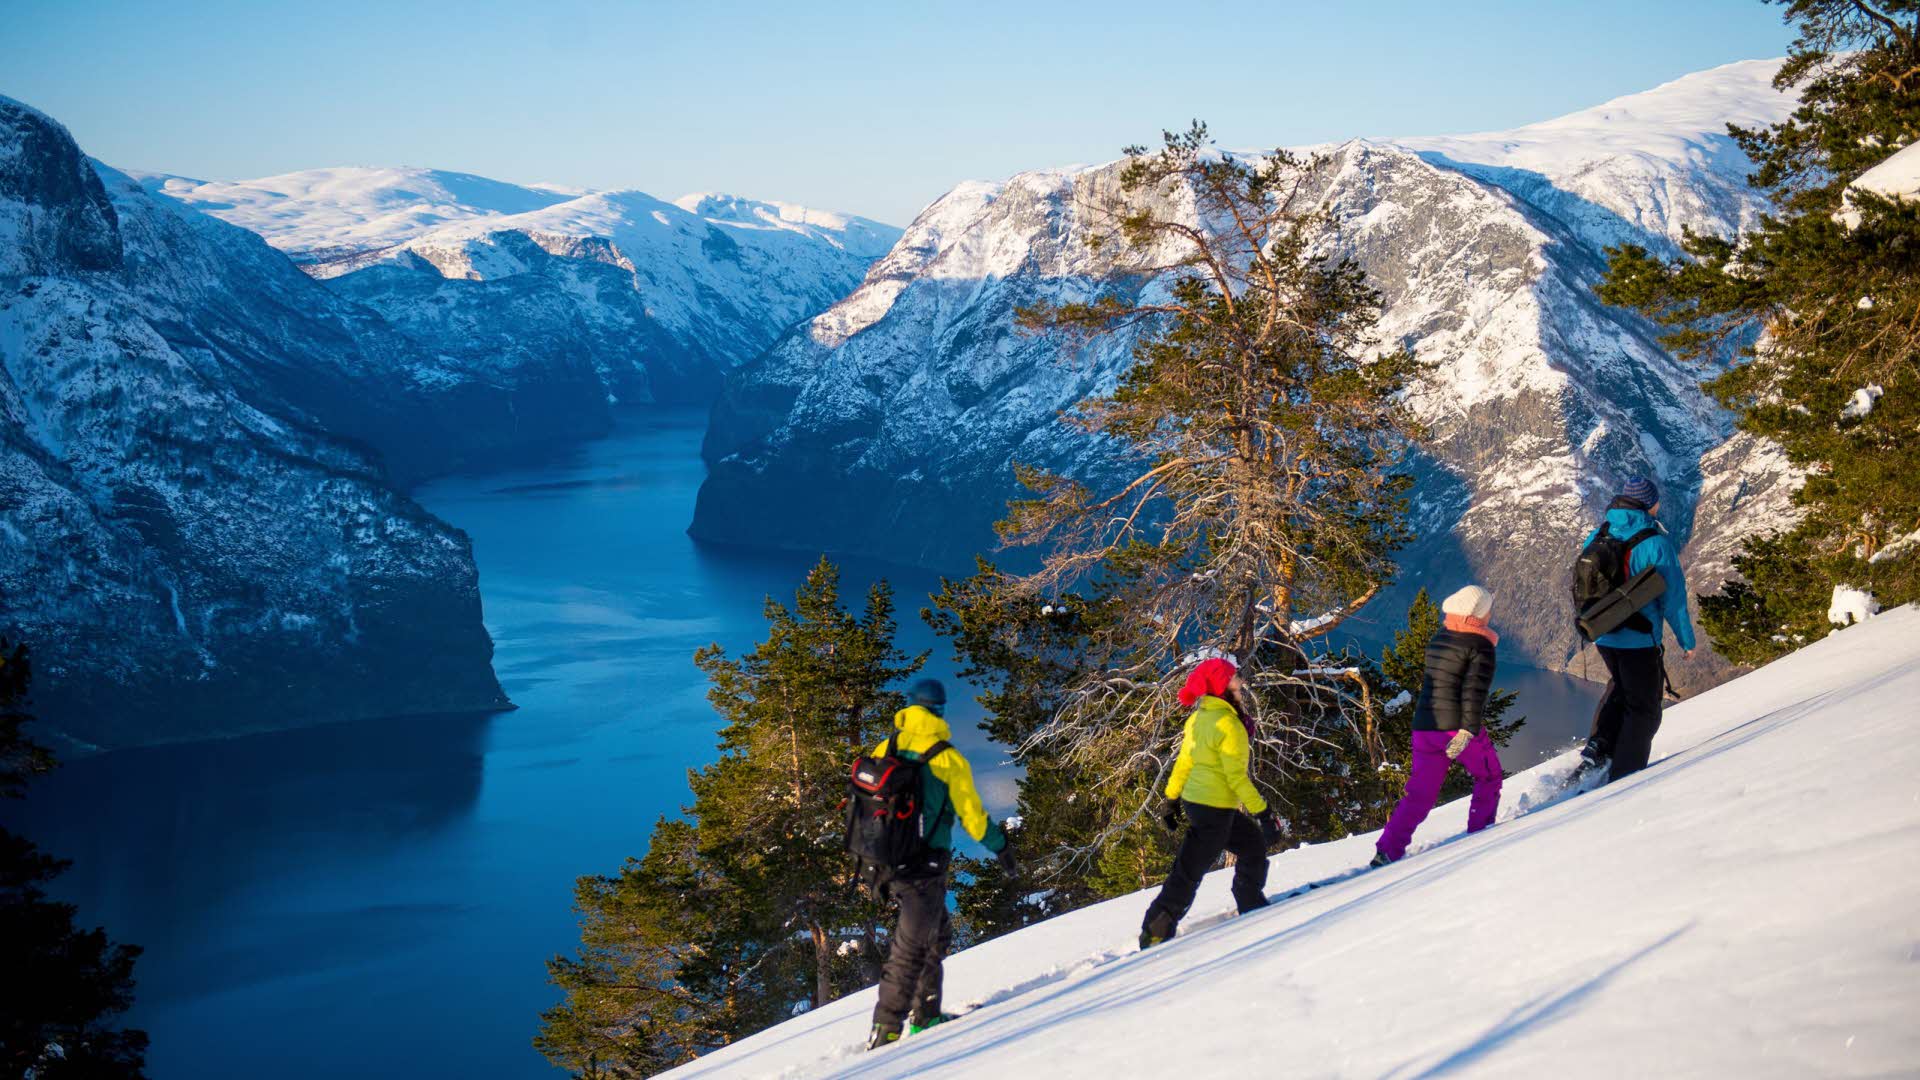 四个人正在进行雪鞋徒步之旅，一路可以看到艾于兰峡湾和白色山峰的美景